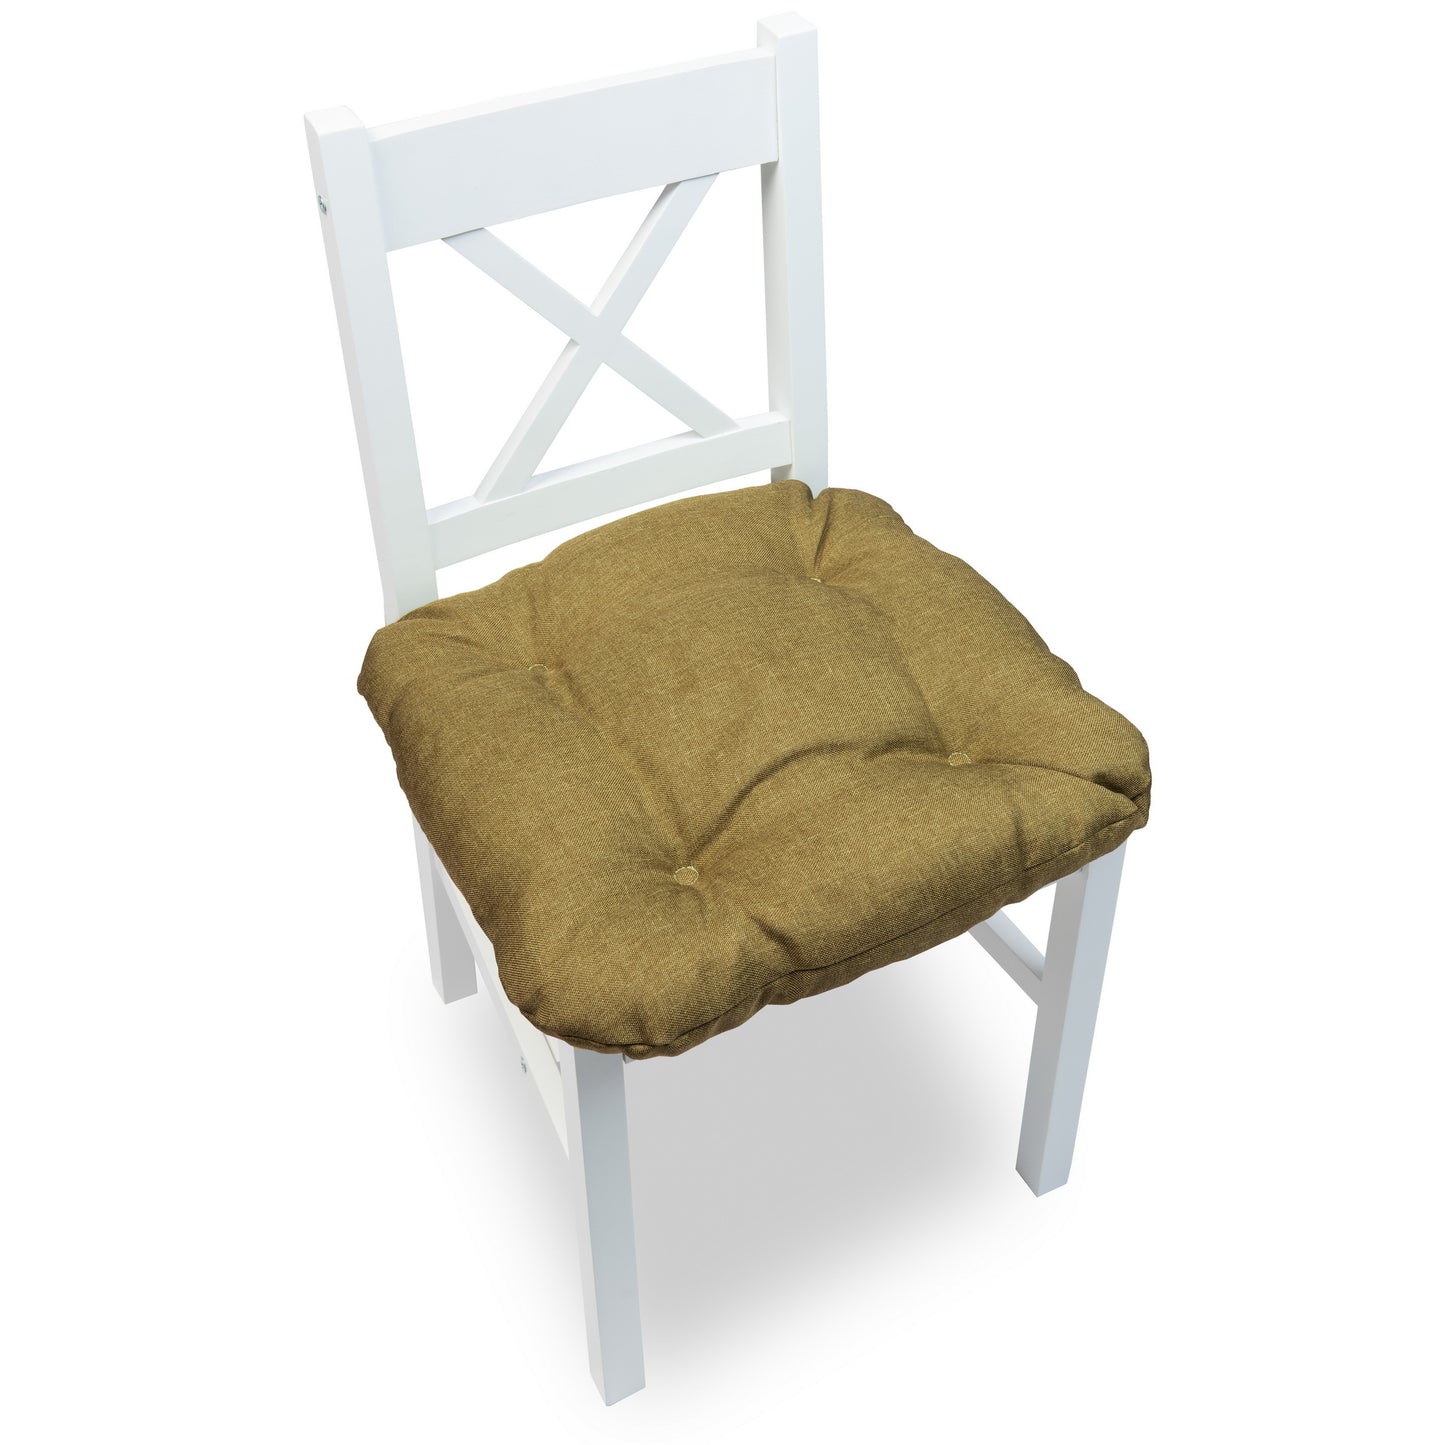 Cuscino sedia con quattro trapuntature e con lacci per il fissaggio